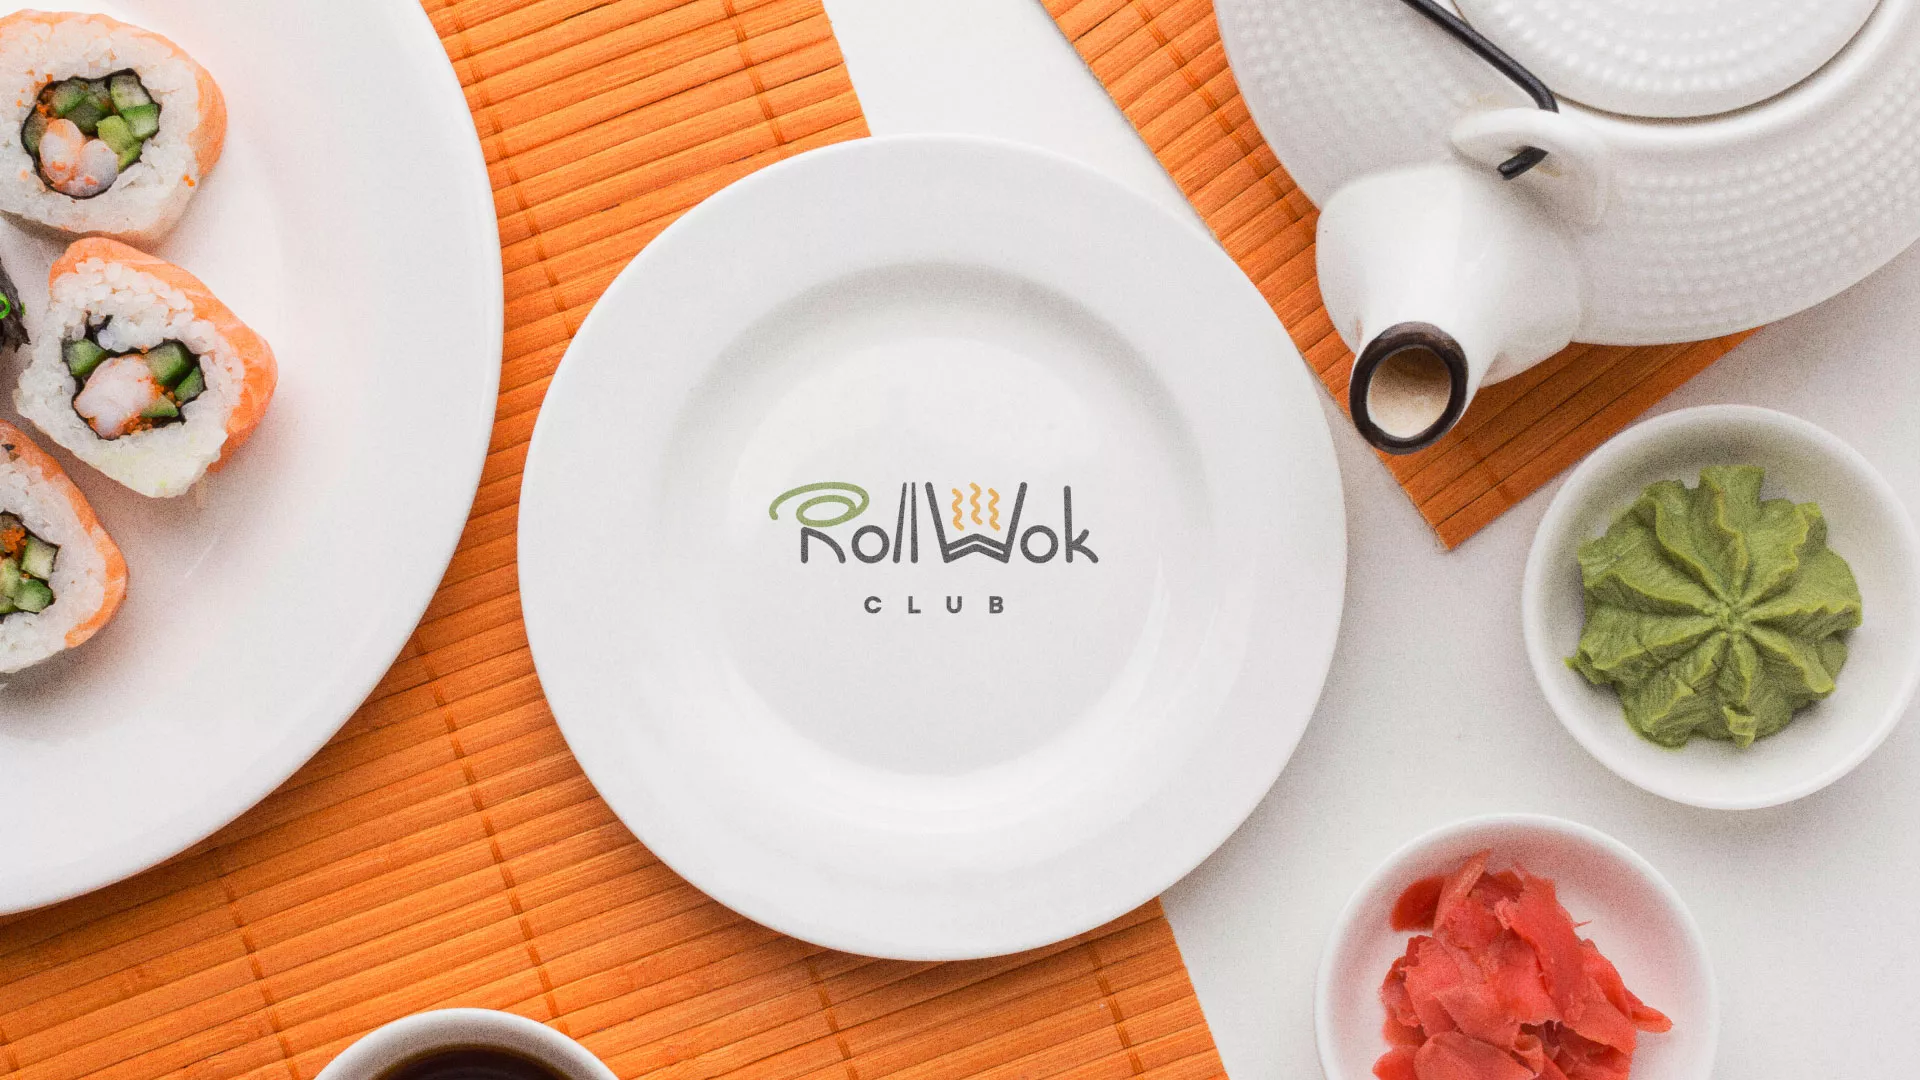 Разработка логотипа и фирменного стиля суши-бара «Roll Wok Club» в Белинском